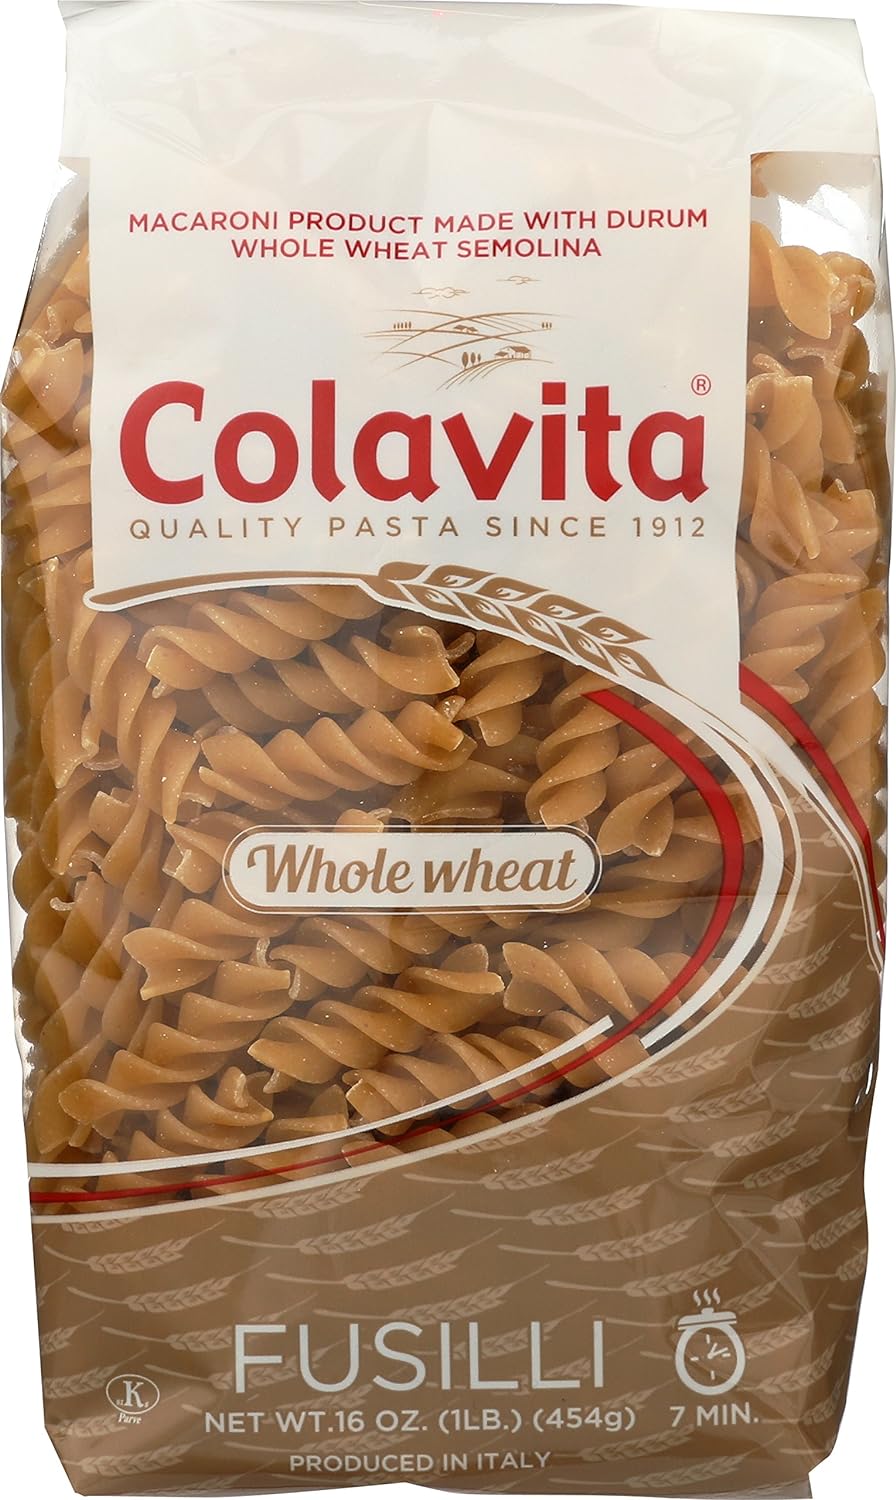 Colavita Pasta - Whole Wheat Cut Fusilli, 1 Pound - Pack of 20